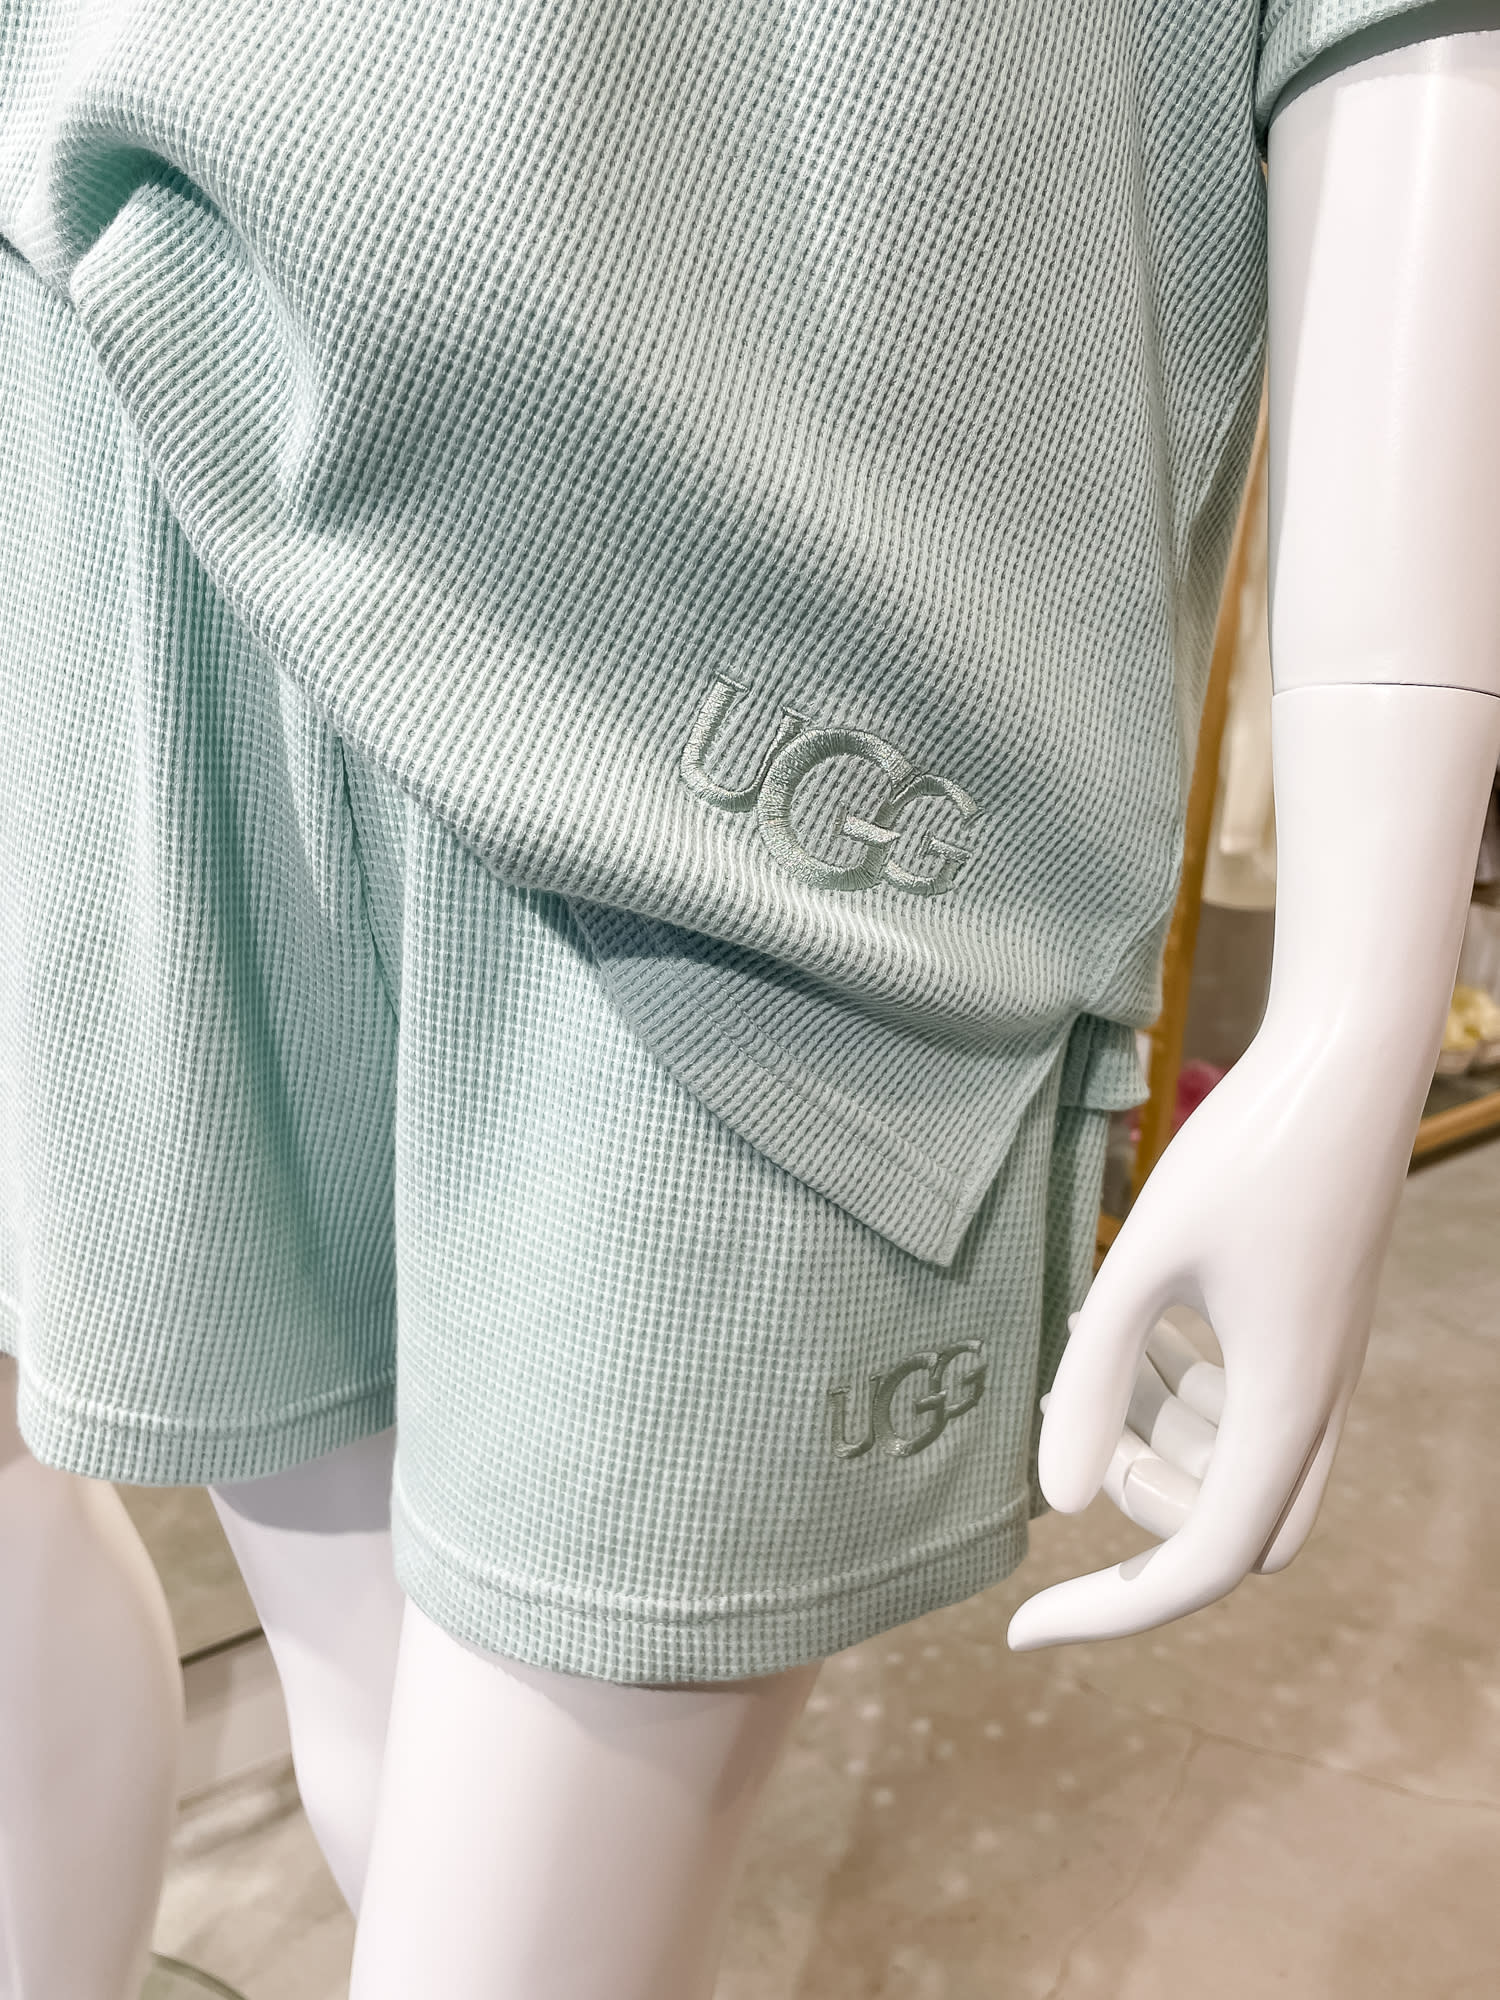 UGGが初のルームウェア発売、アイコンシューズのシープスキンから着想 